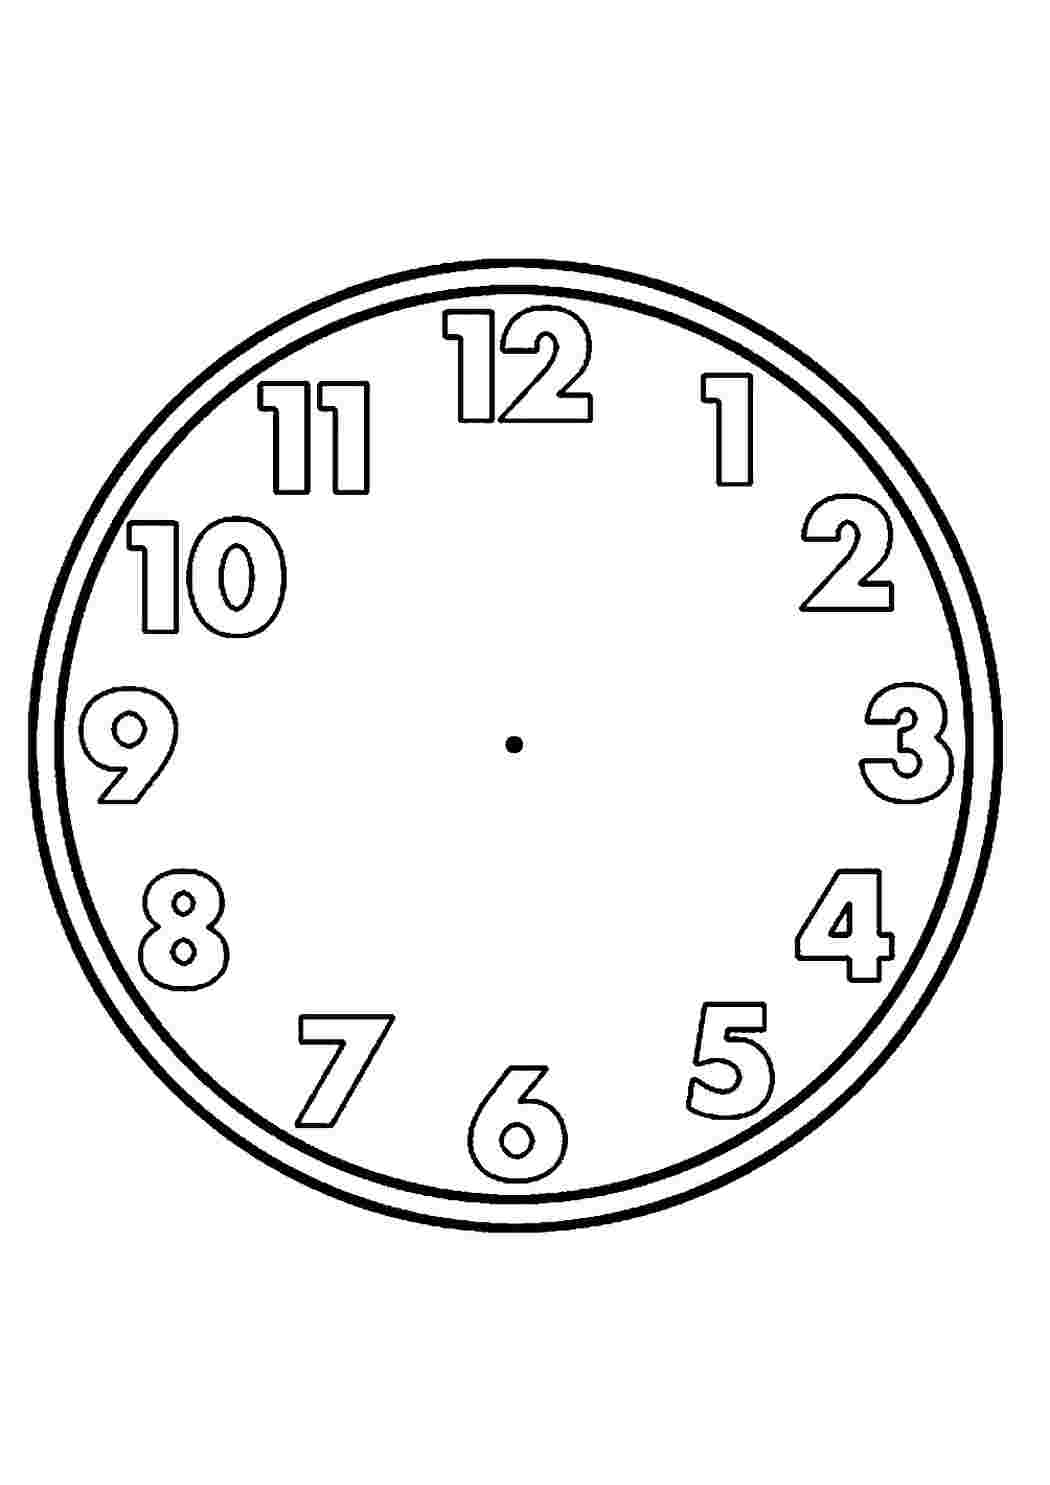 Квадратные часы для детей для раскрашивания